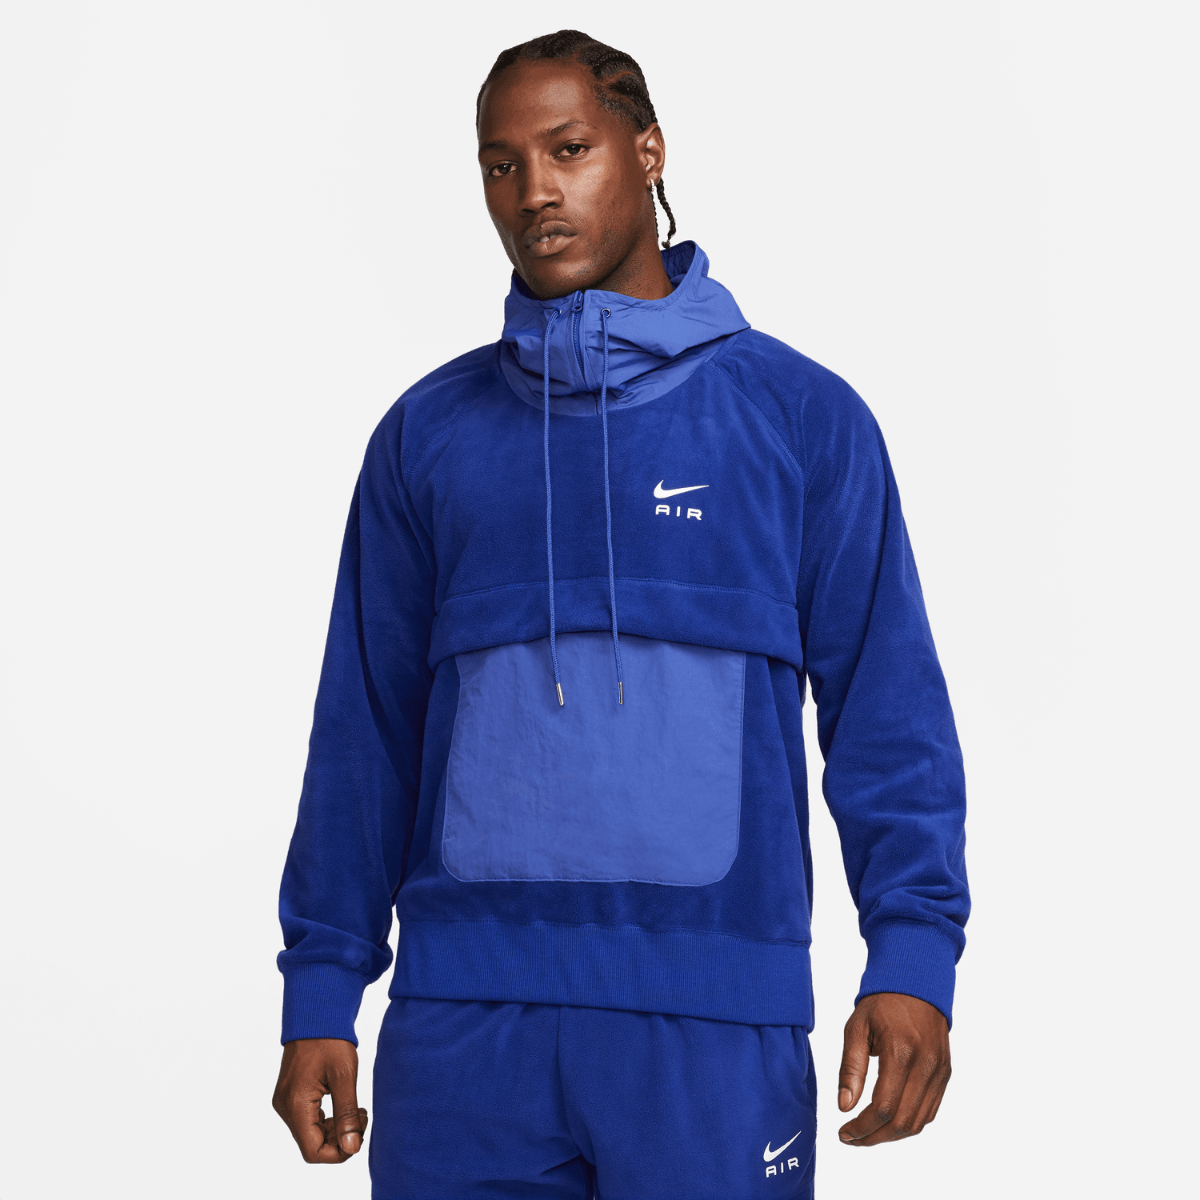 Sudadera Nike - Azul